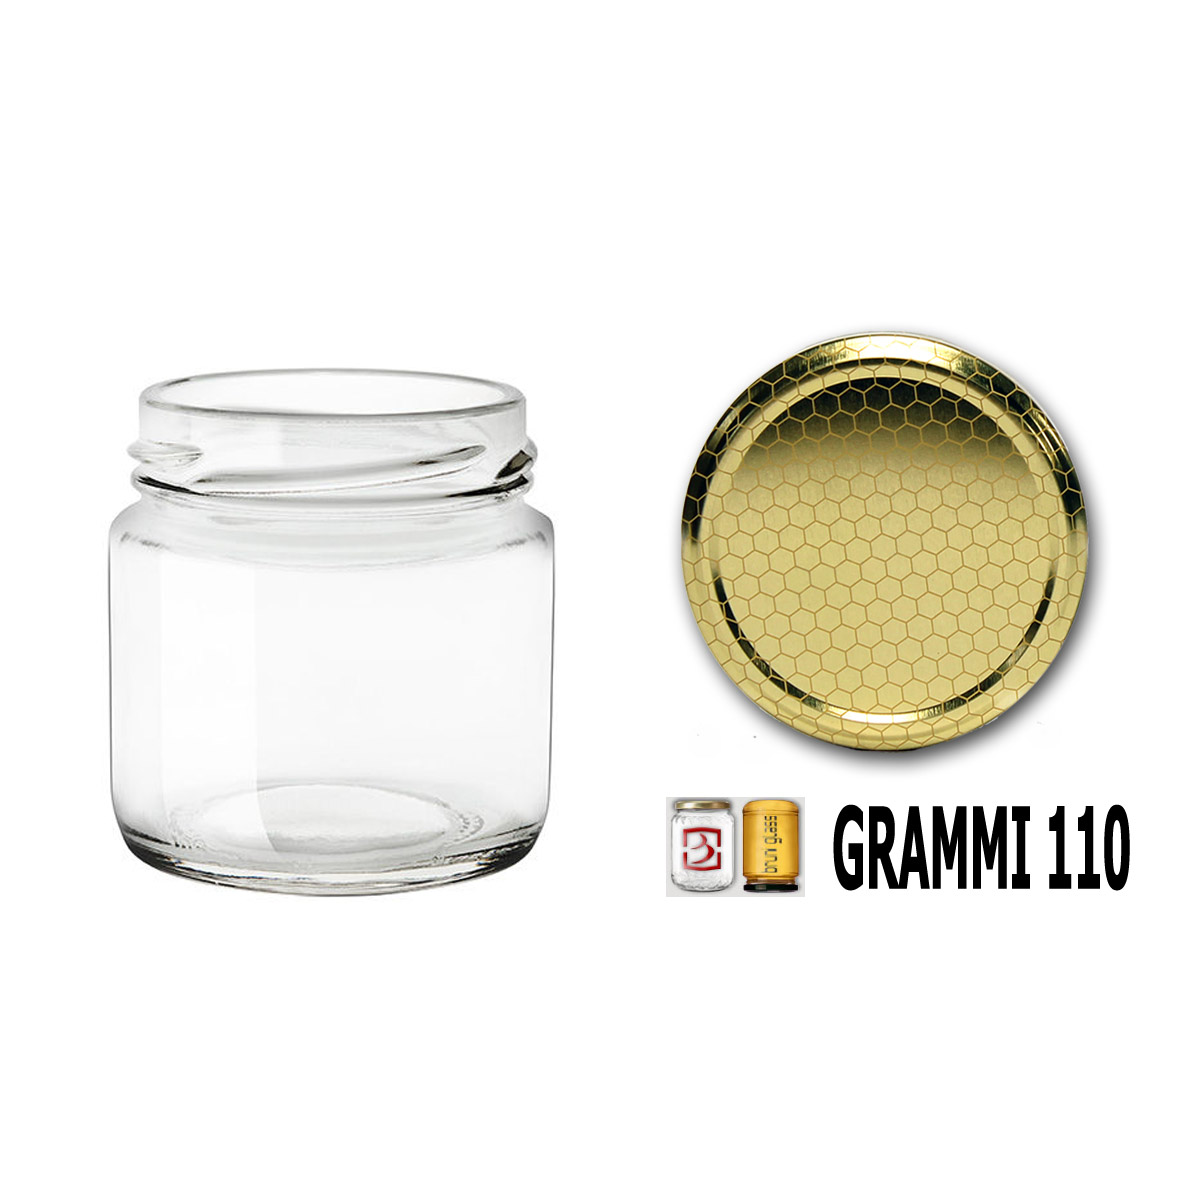 Vaso vetro per assaggi da grammi 110 di Miele - Agraria Ughetto Apicoltura  Online.